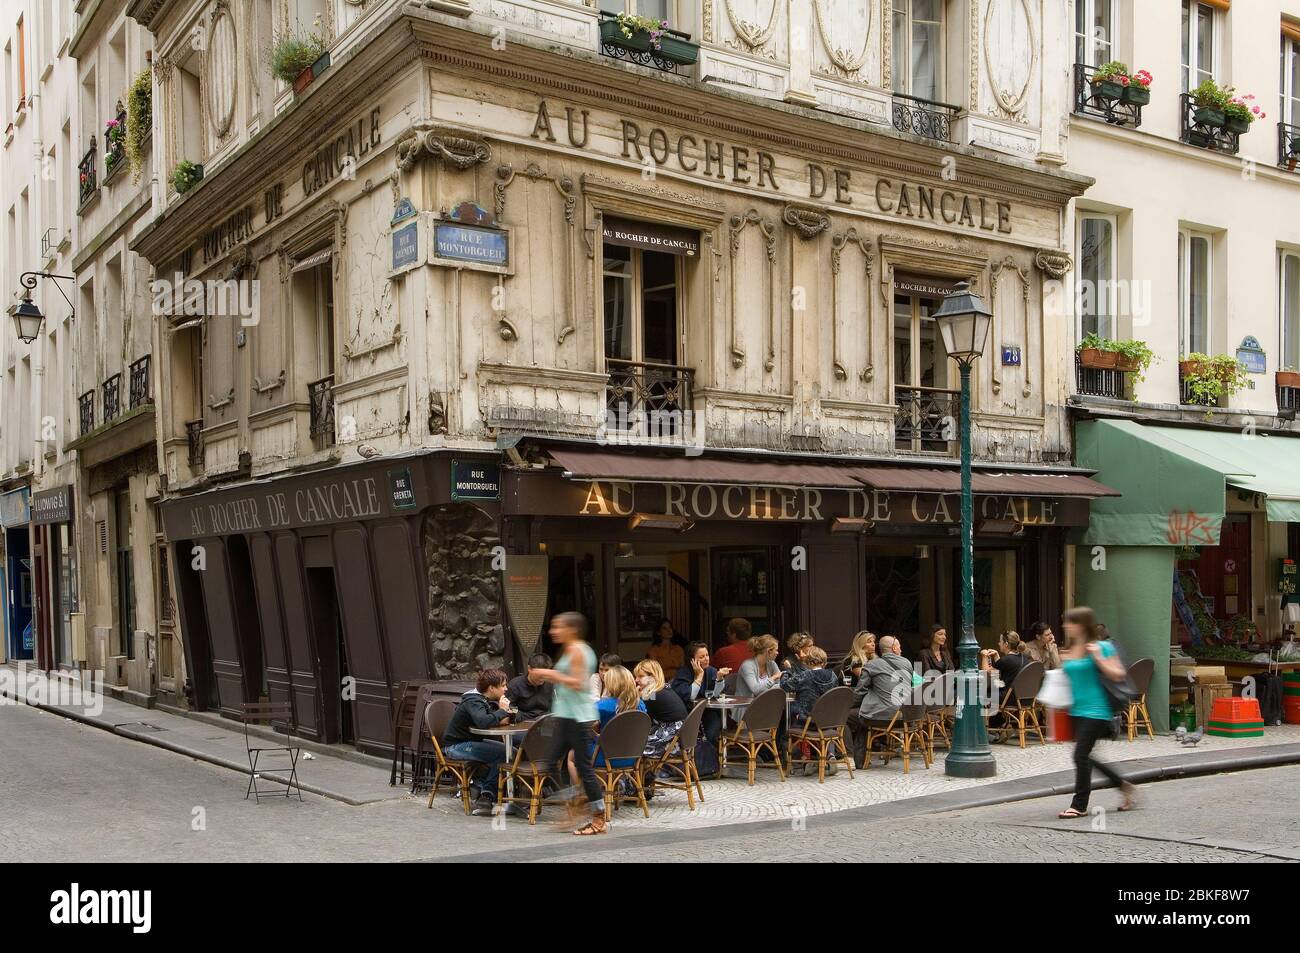 Au Rocher du Cancale Cafe restaurant, Rue Montorgueil, Paris, France Stock Photo